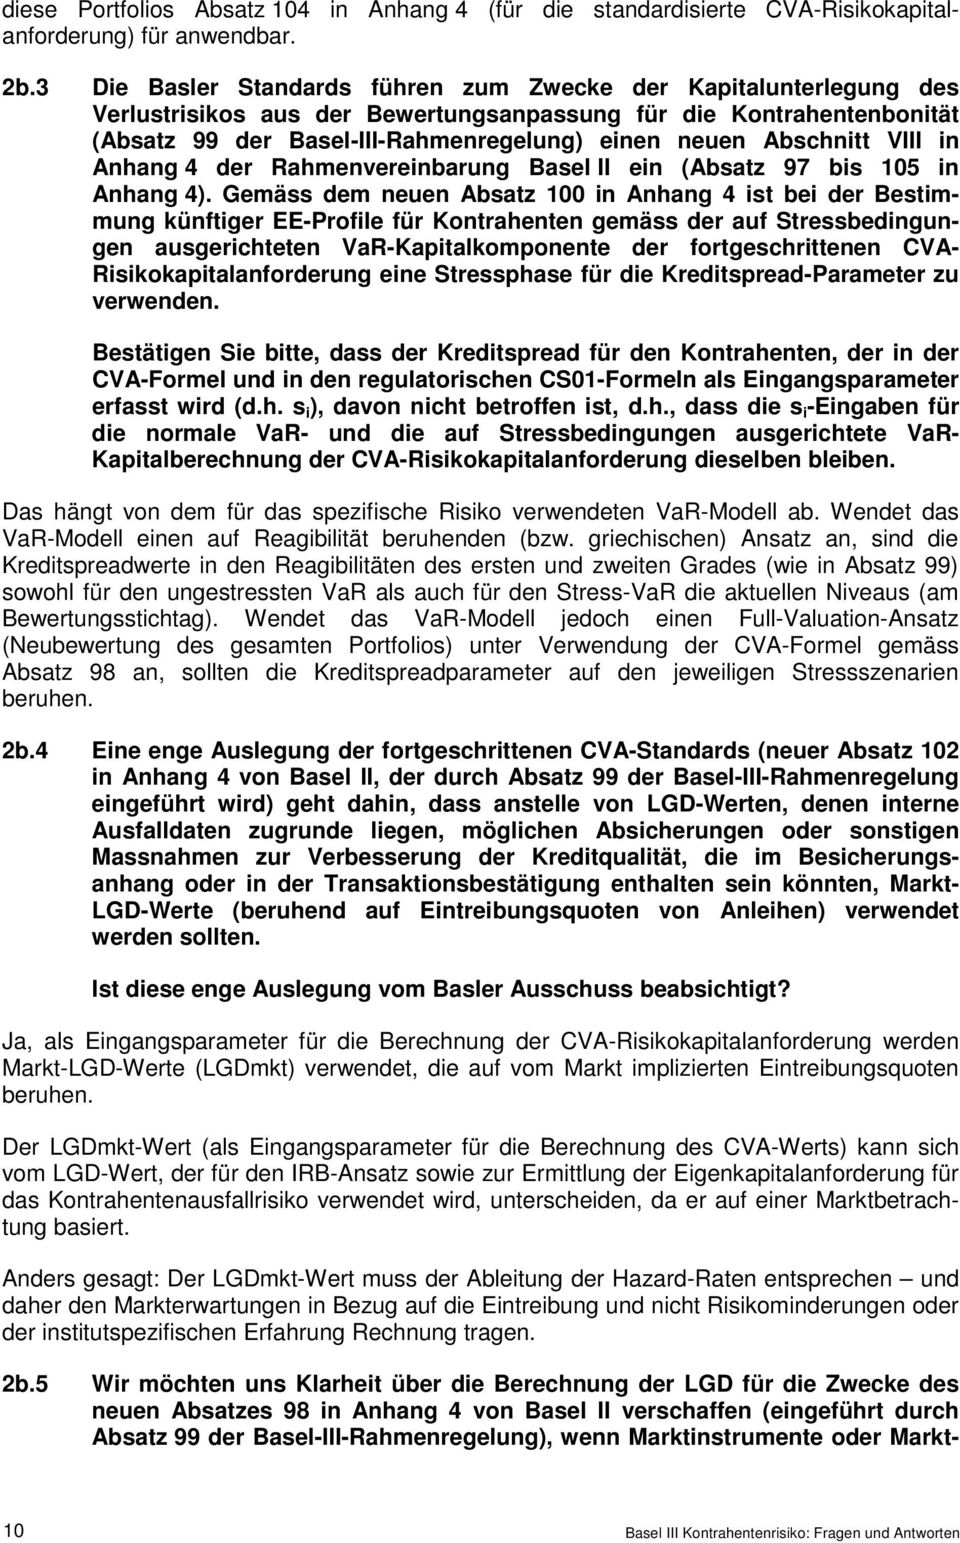 Abschnitt VIII in Anhang 4 der Rahmenvereinbarung Basel II ein (Absatz 97 bis 105 in Anhang 4).